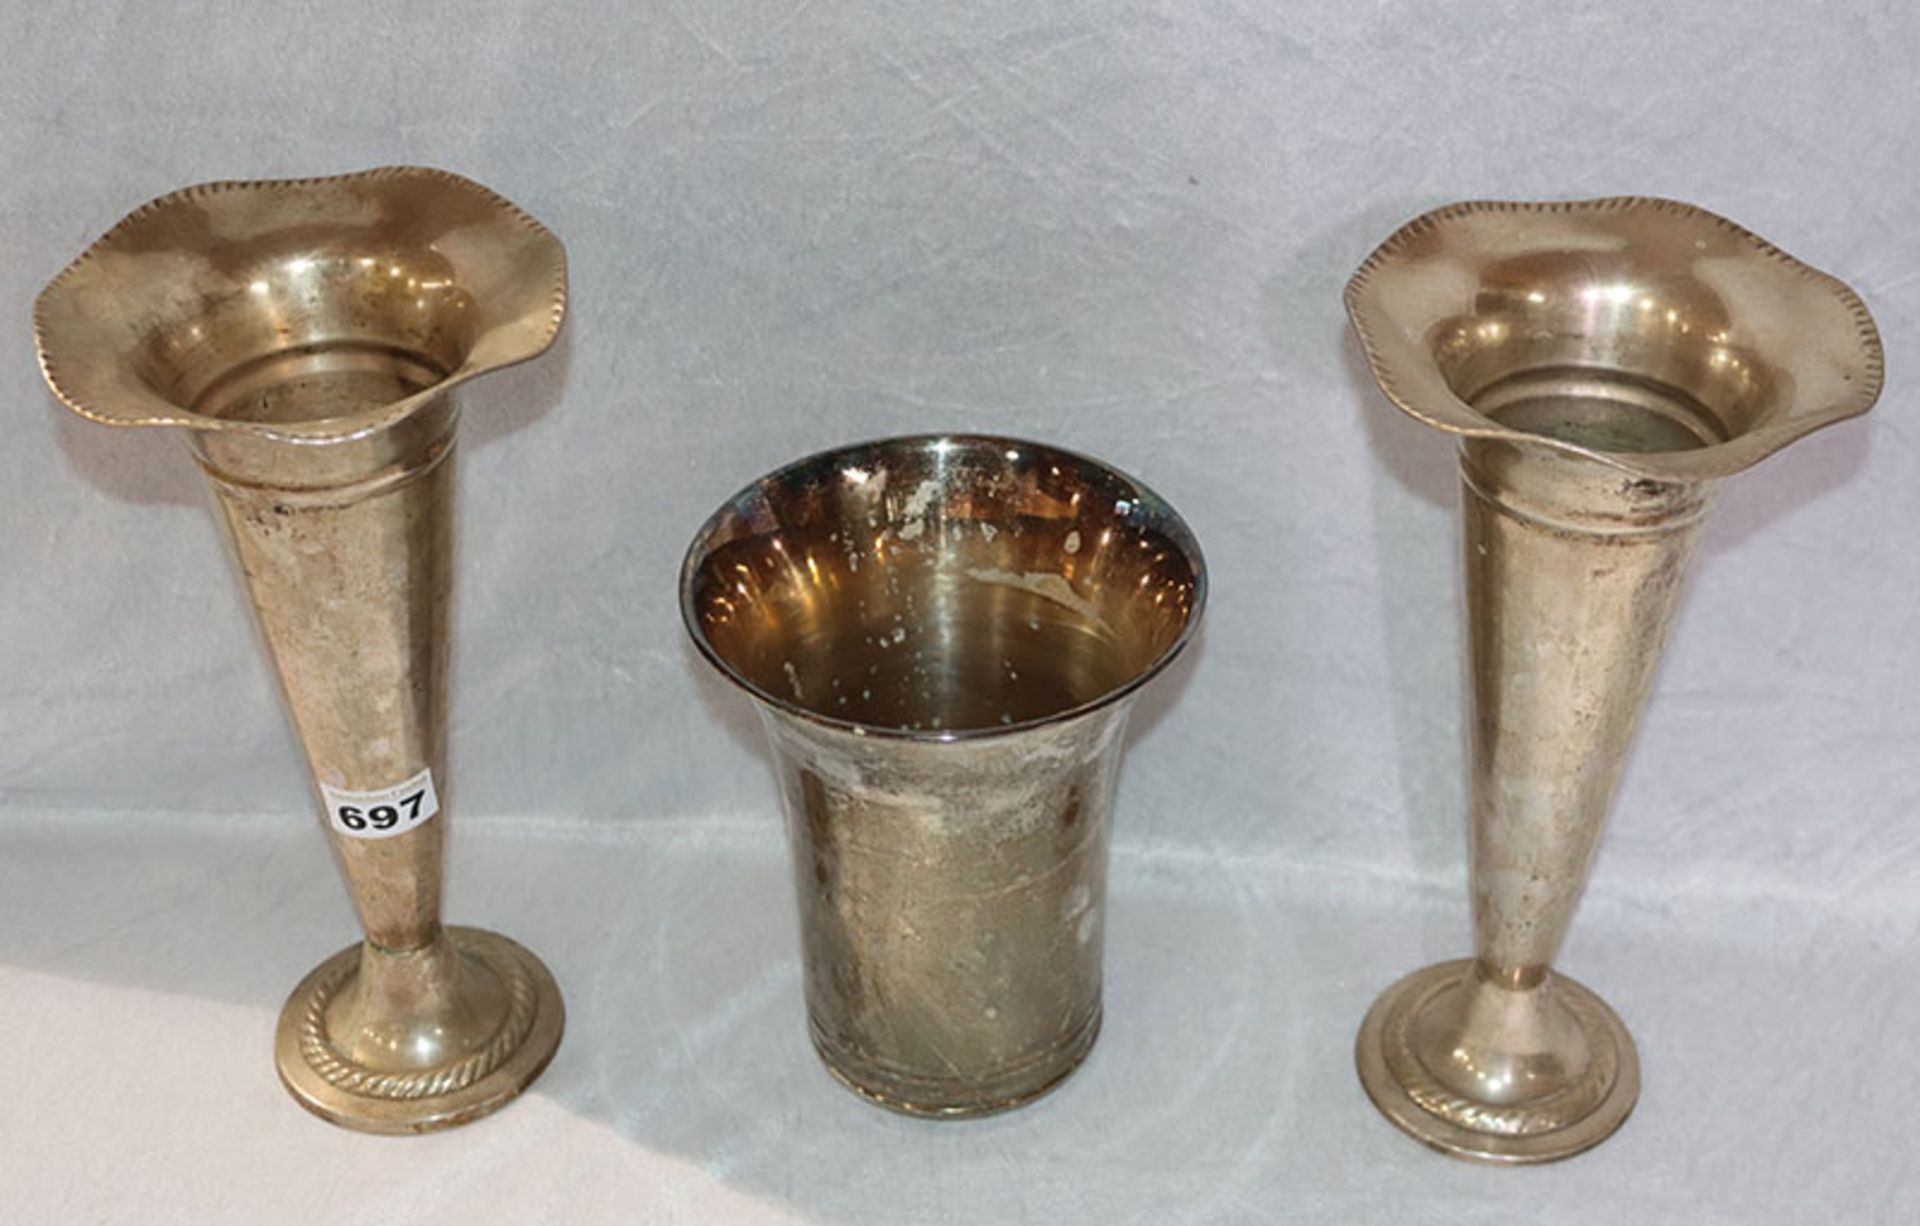 Paar Metall Vasen mit geschwungenem Rand, H 29 cm, D 16 cm, und Bechervase, H 18,5 cm, D 16 cm,